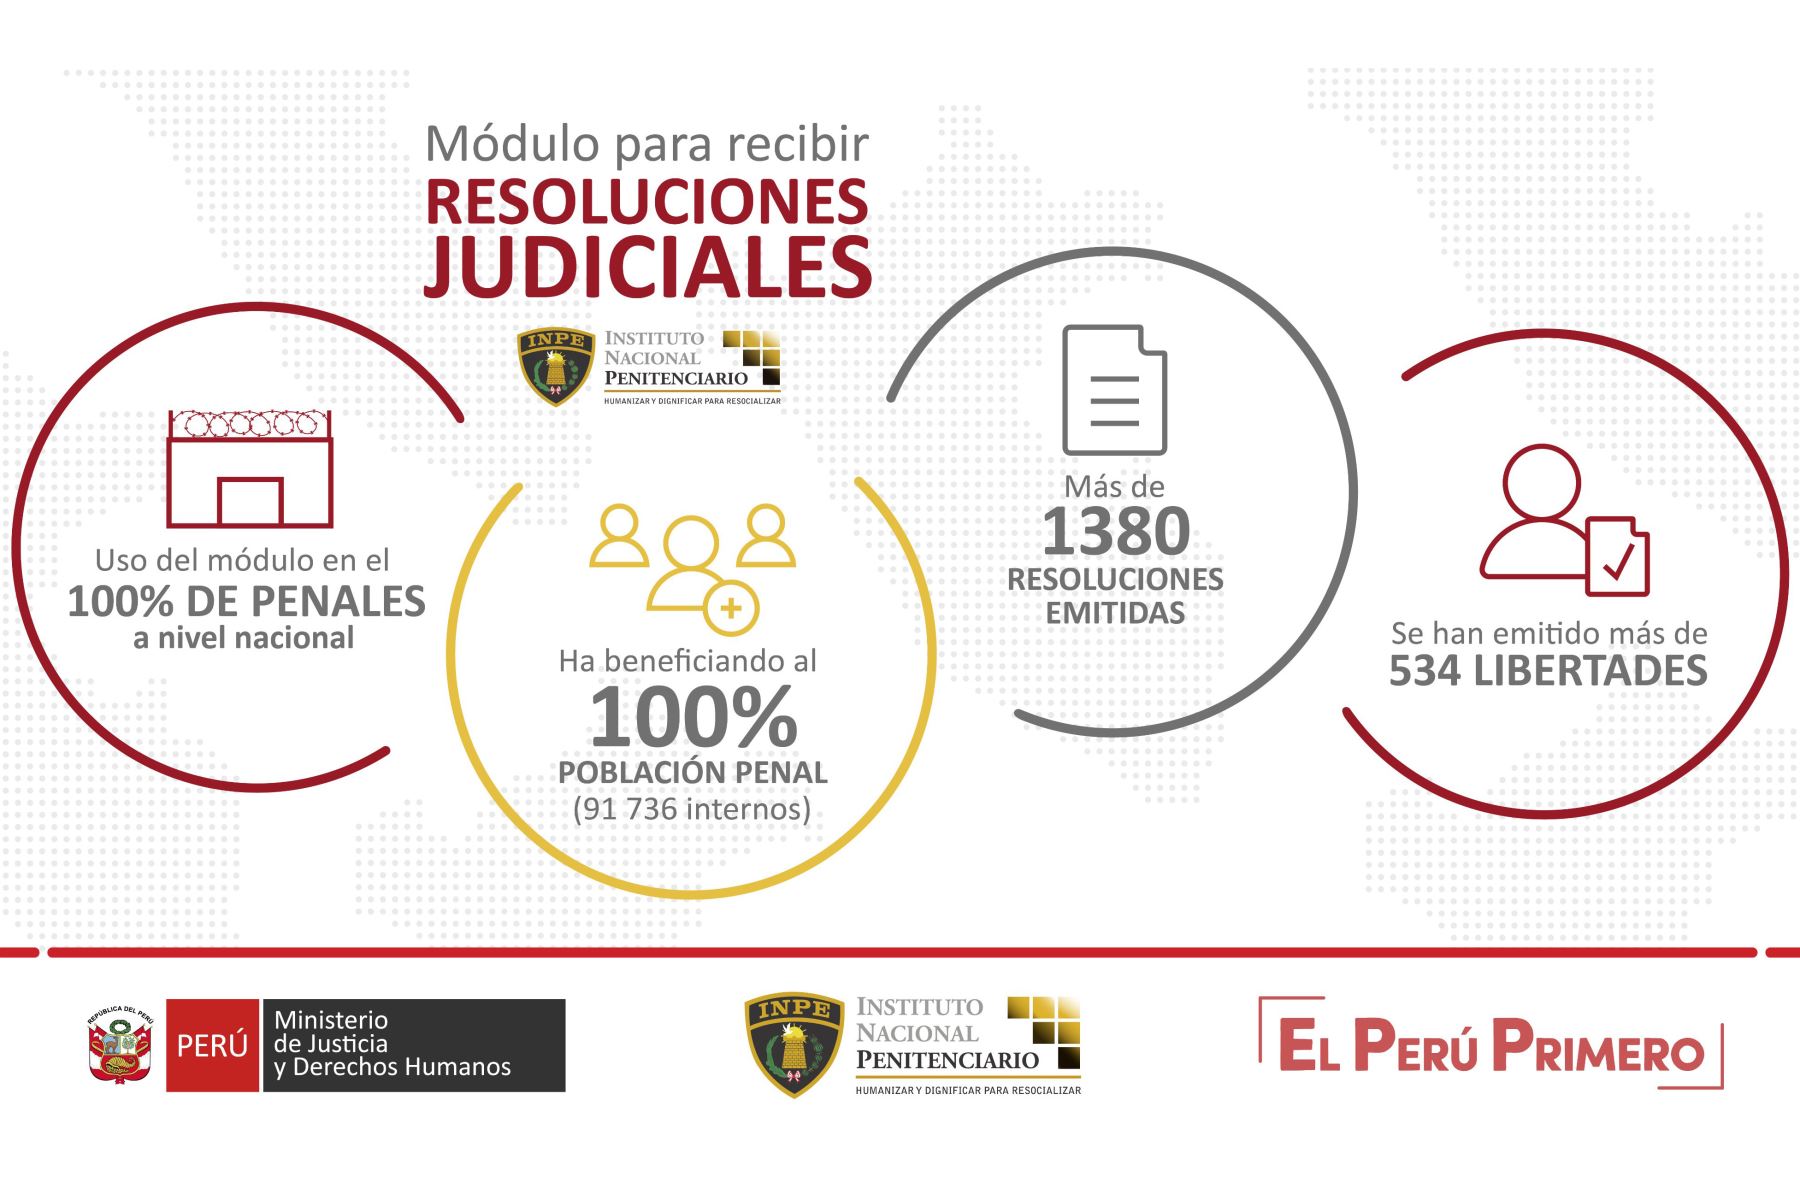 El módulo de recepción de resoluciones judiciales el Inpe ha podido tramitar más de 534 resoluciones judiciales vinculadas a libertades de internos. Foto: ANDINA/Inpe